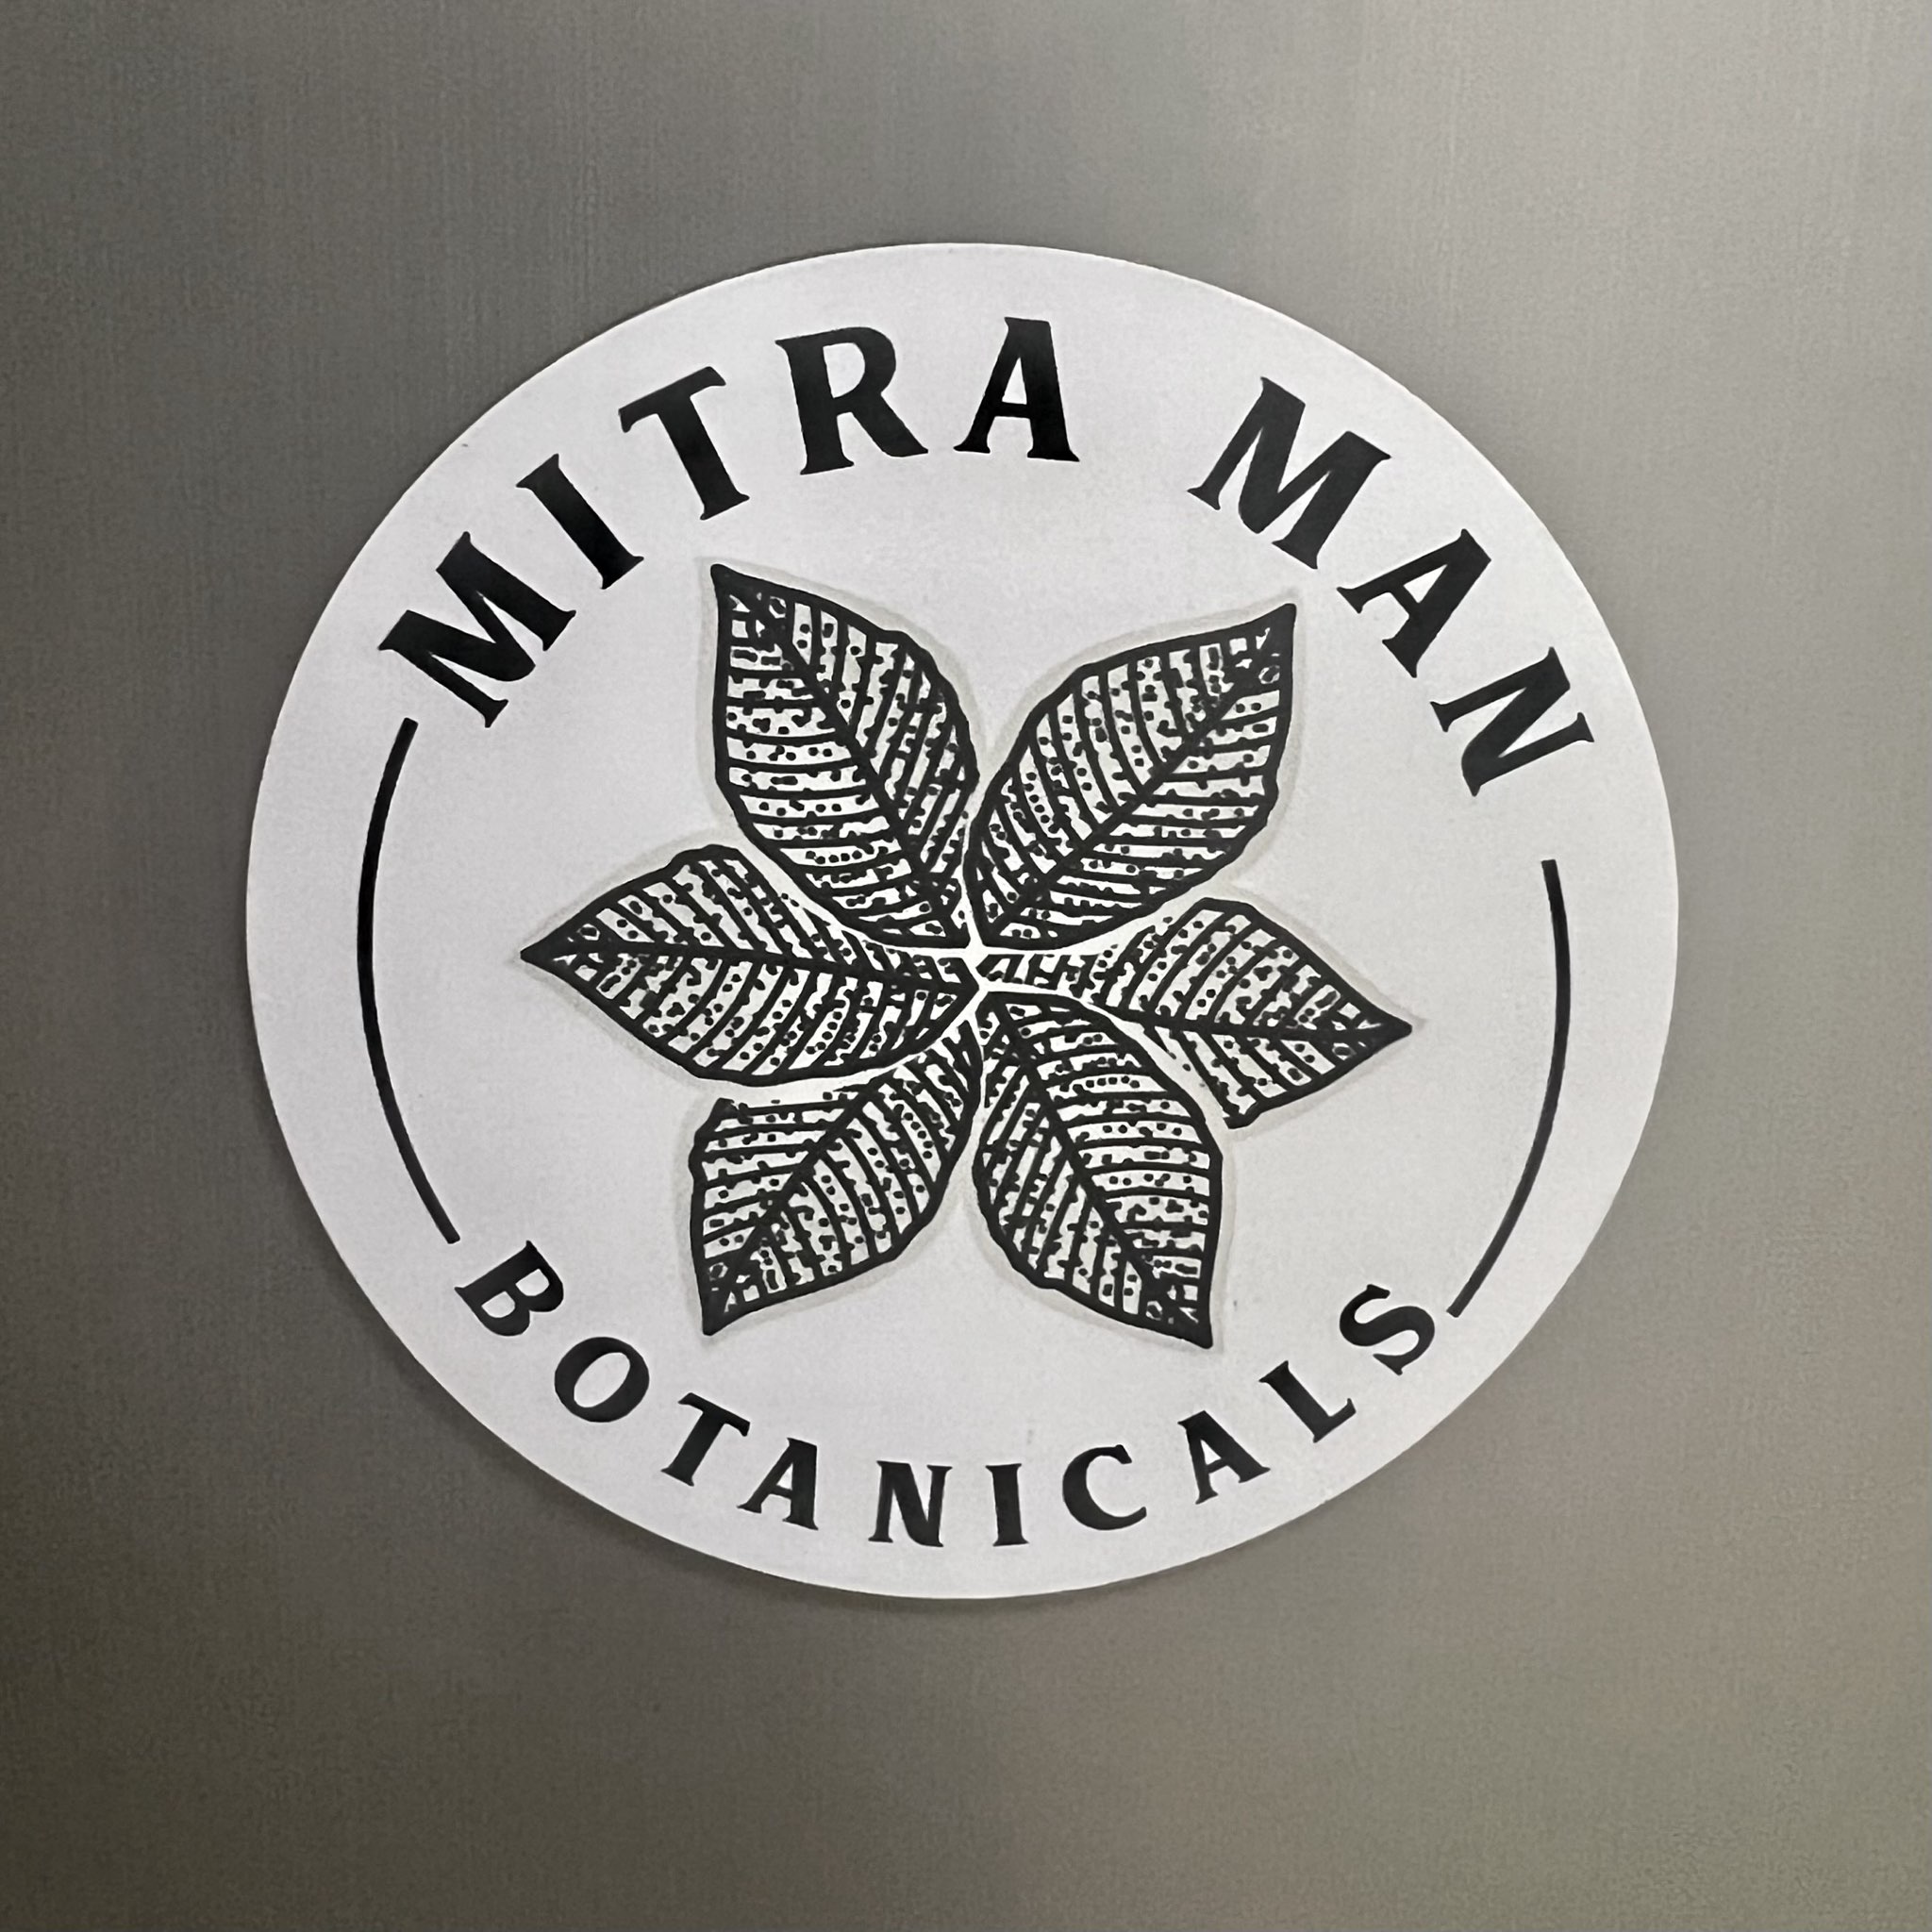 MitraMan Botanicals